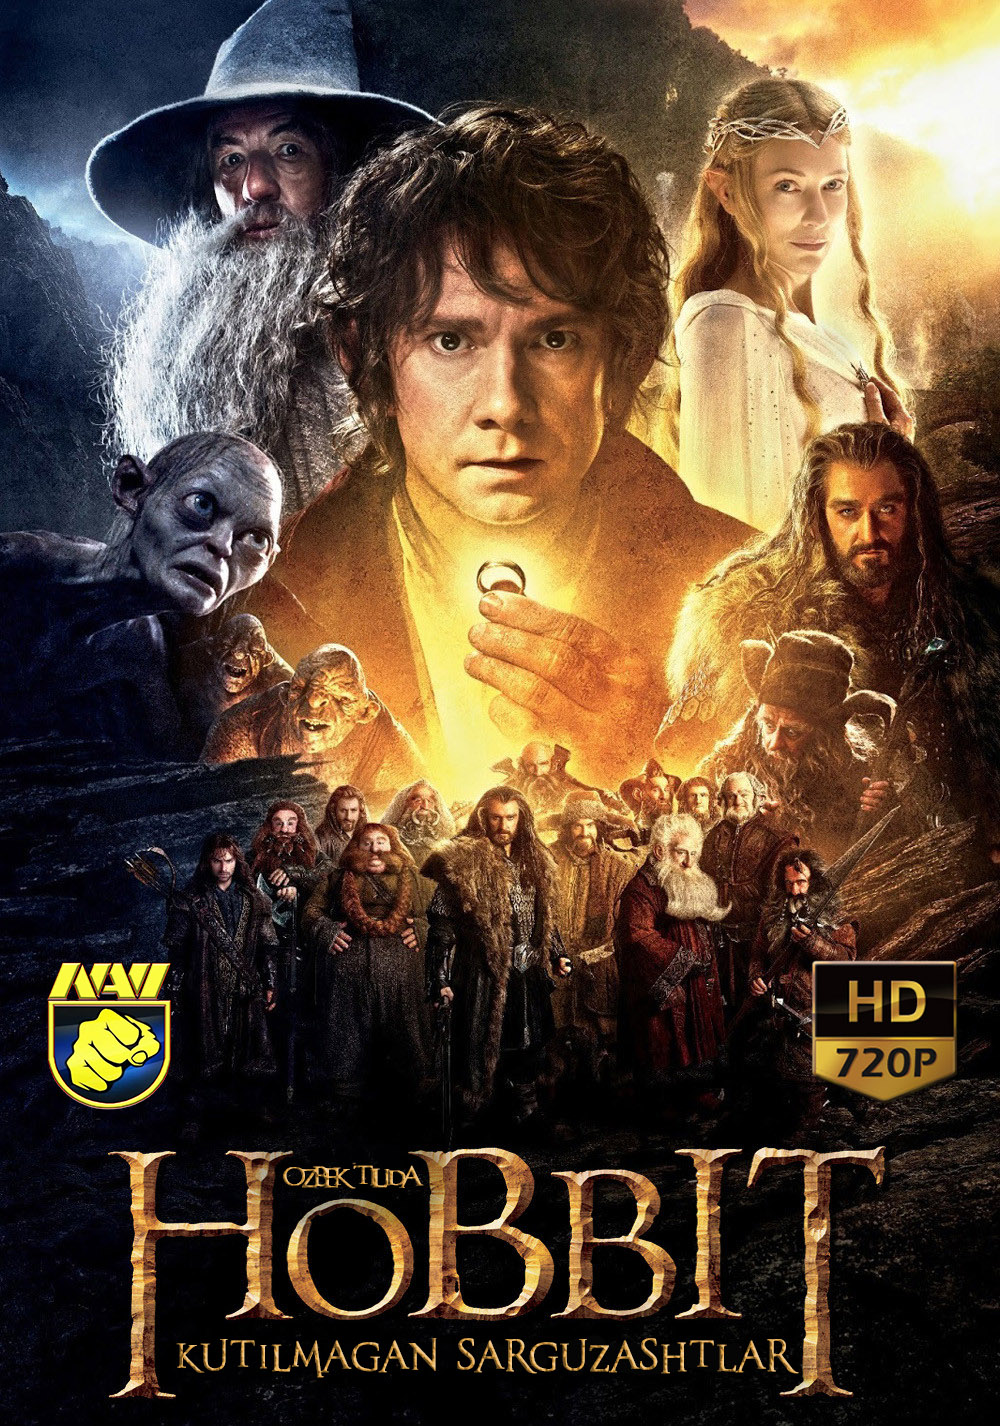 Hobbit-1:kutilmagan sarguzashtlar (o'zbek tilida)HD